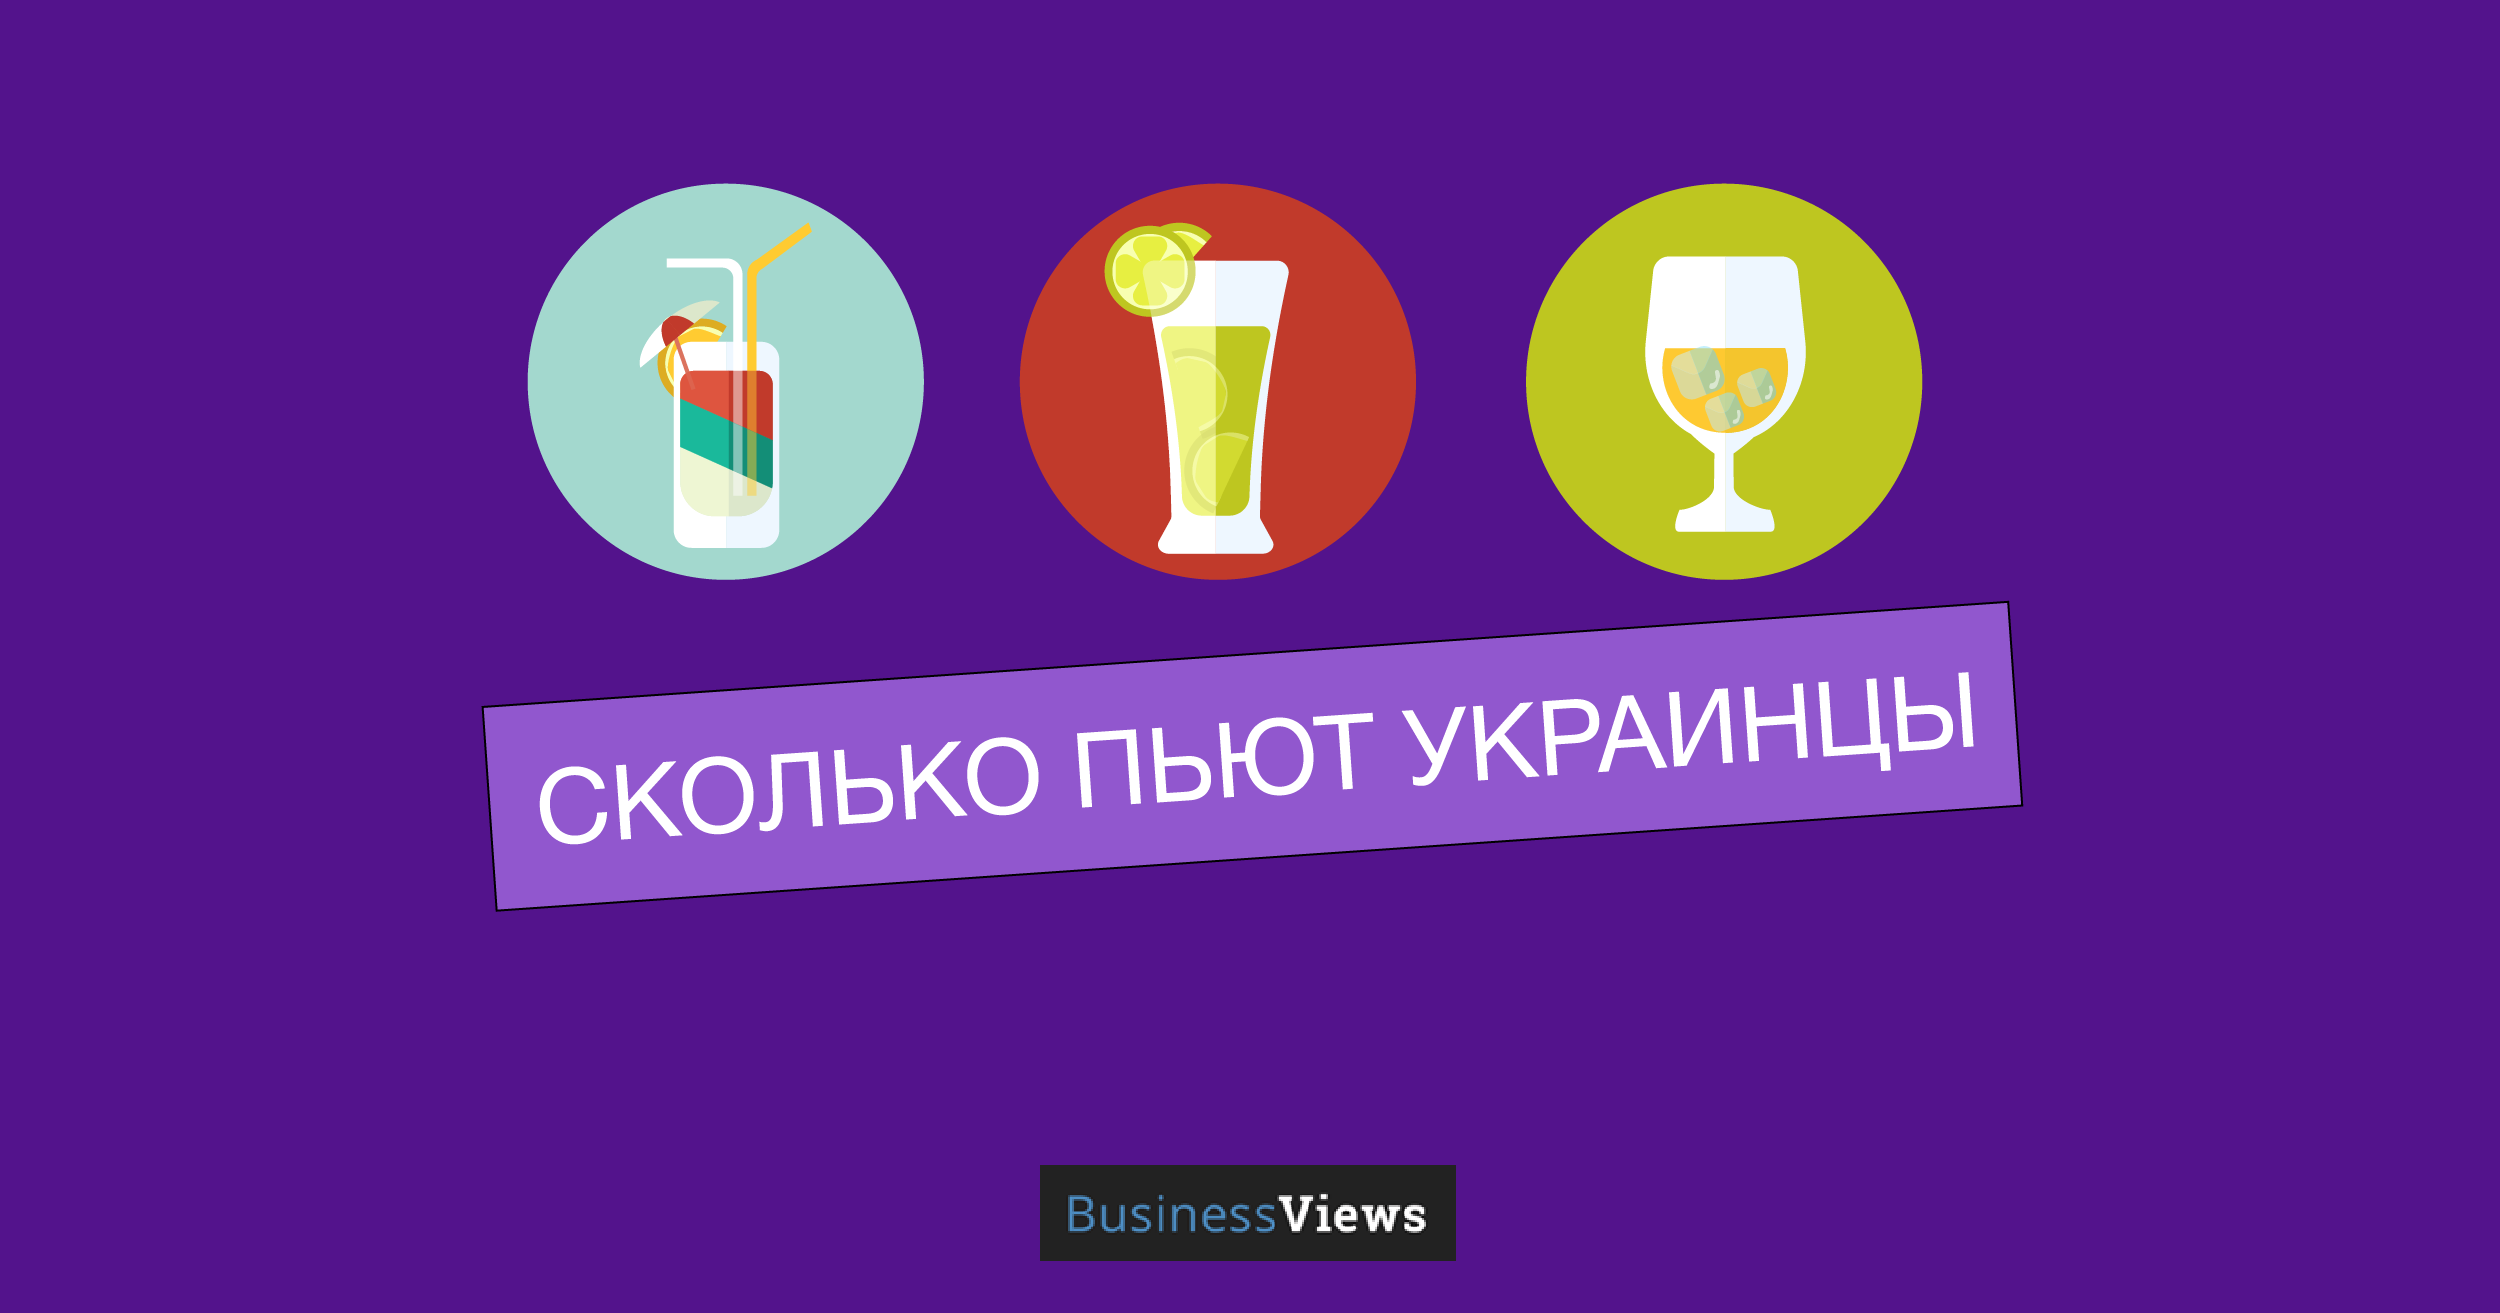 Что, где, когда: сколько пьют украинцы и какой алкоголь предпочитают